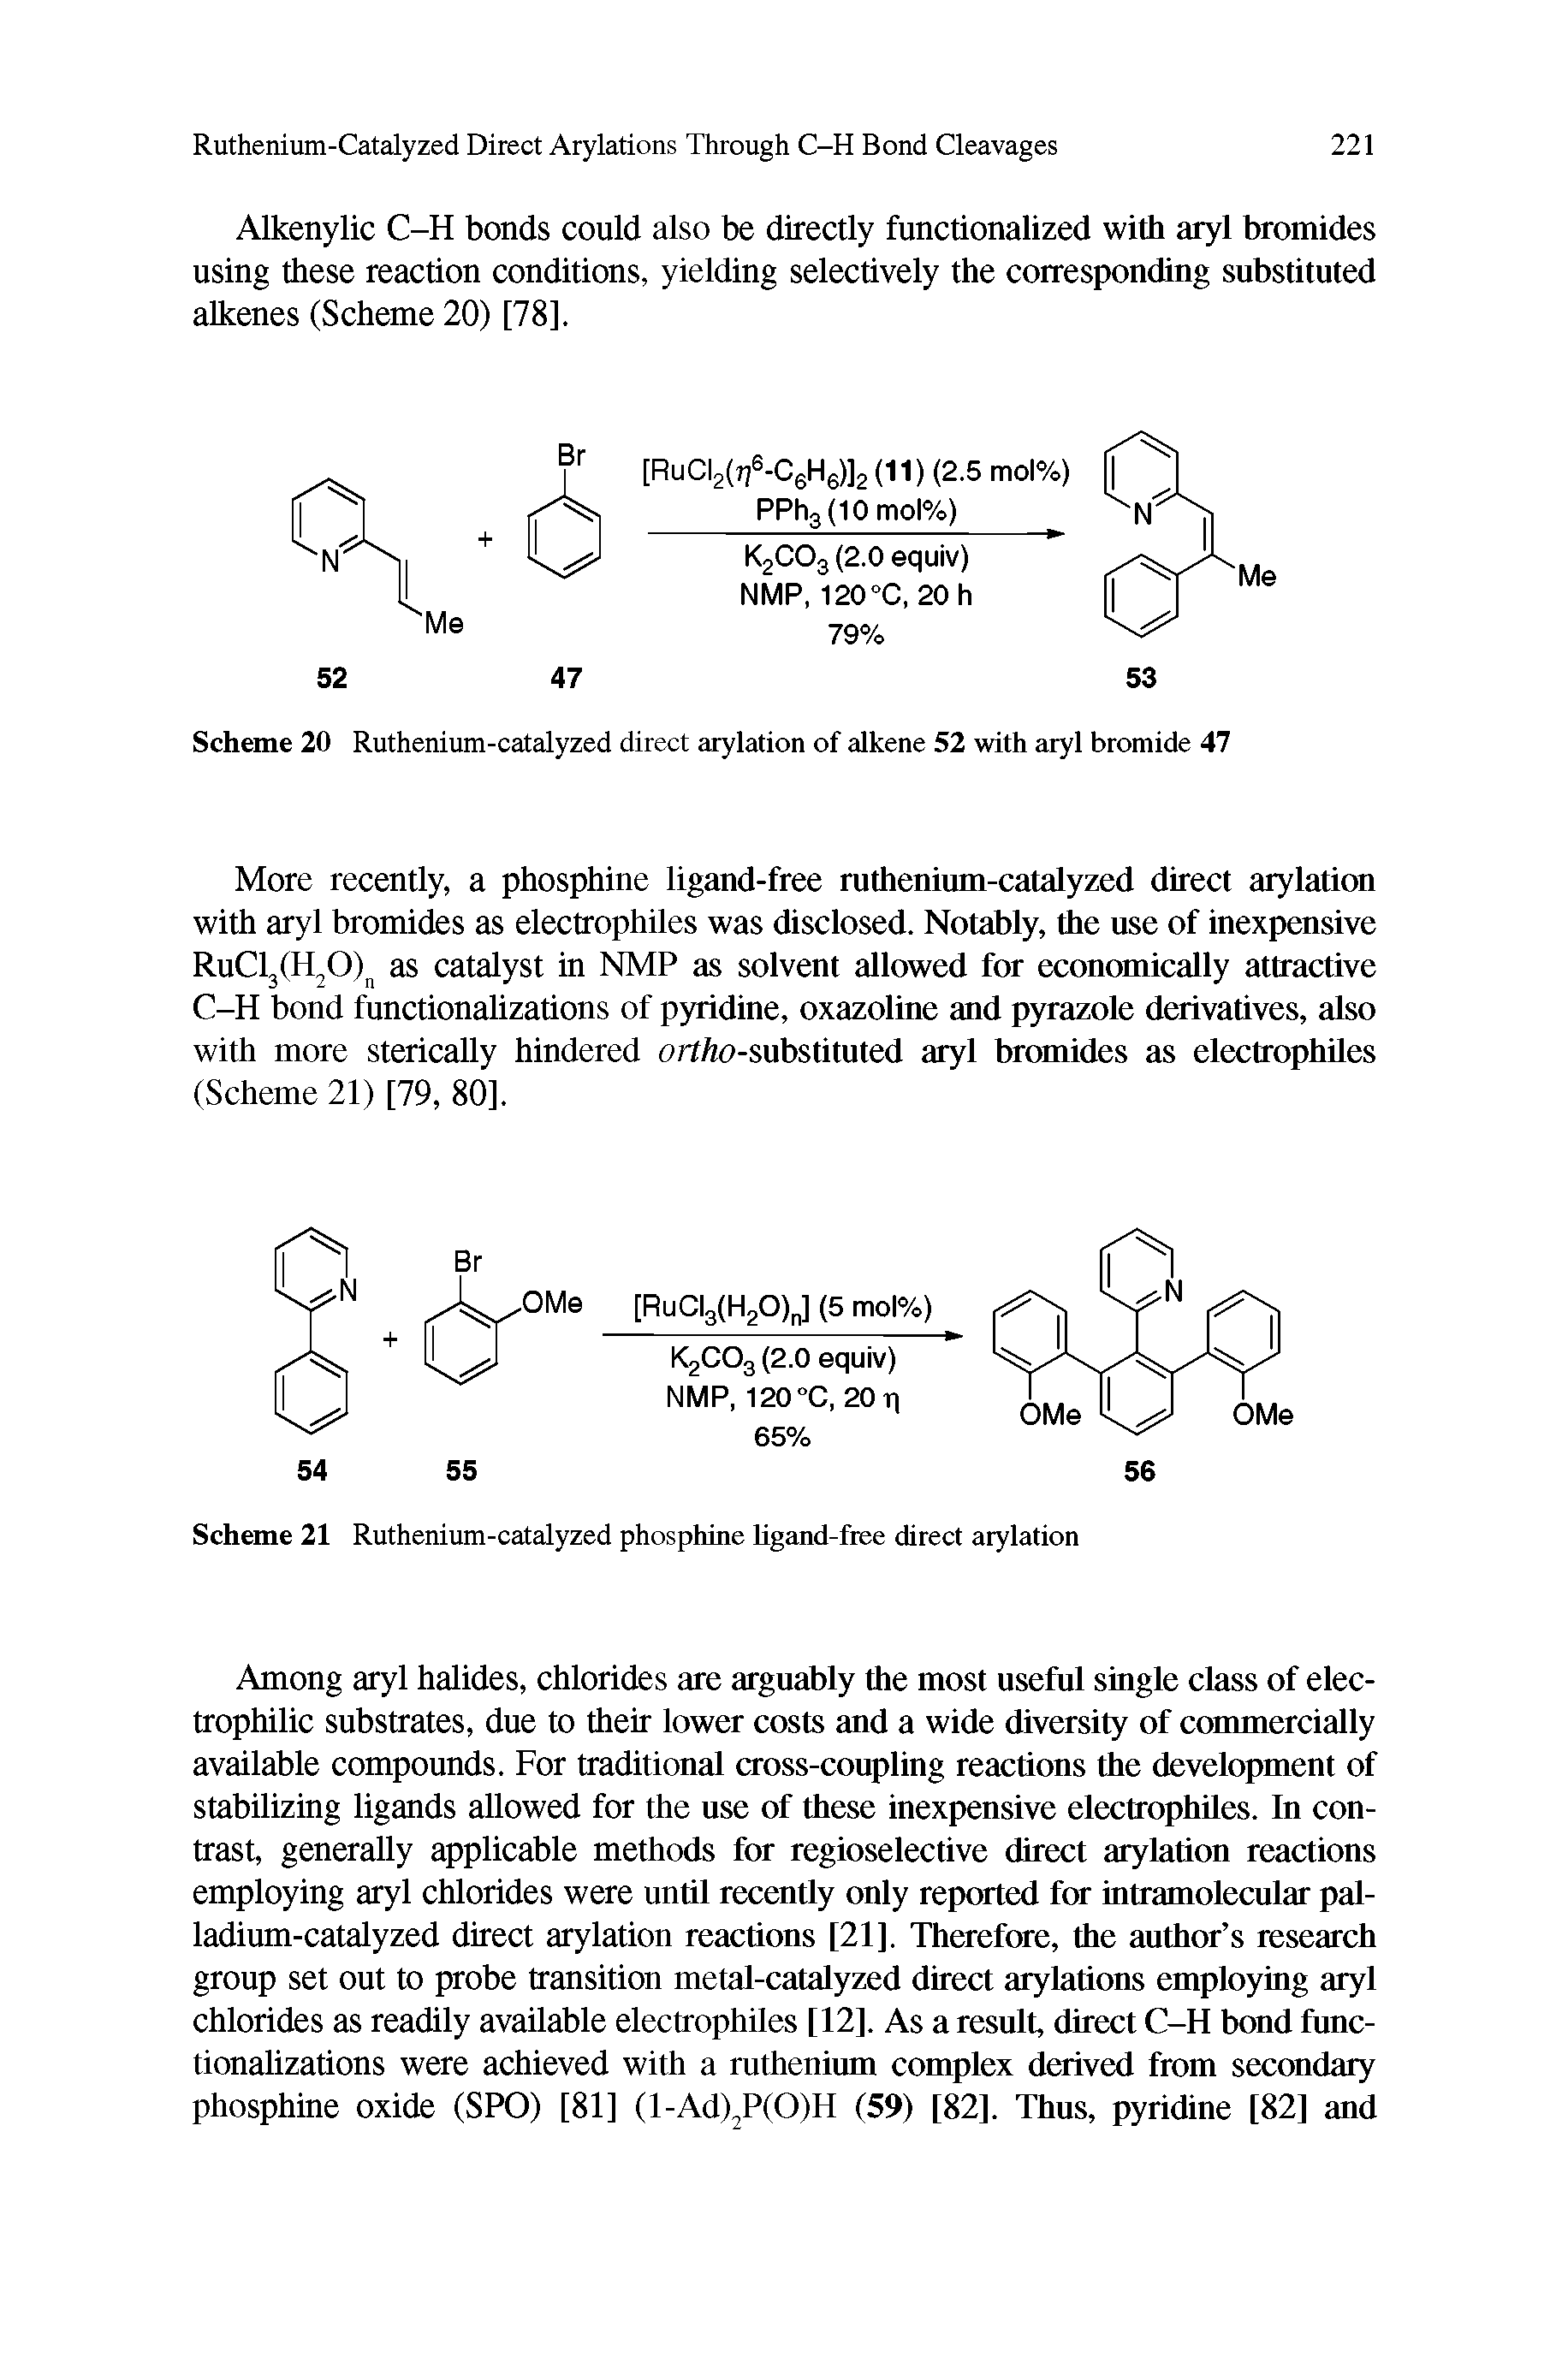 Scheme 21 Ruthenium-catalyzed phosphine ligand-free direct arylation...